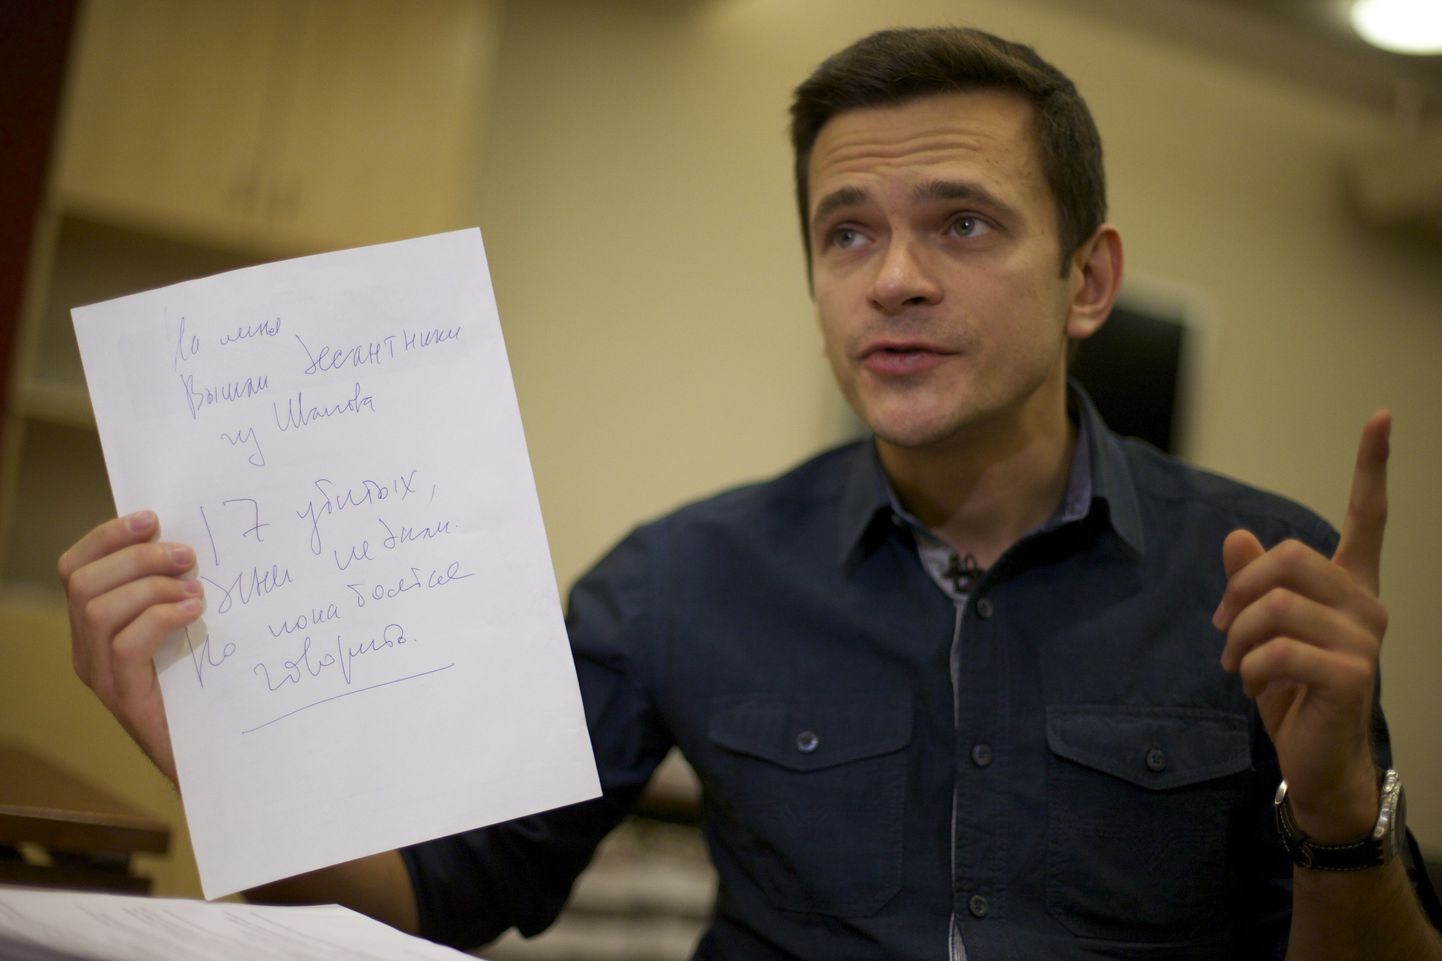 Ilja Jašin hoidmas käes paberit, mis pärineb väidetavalt Boris Nemtsovi materjalide hulgast